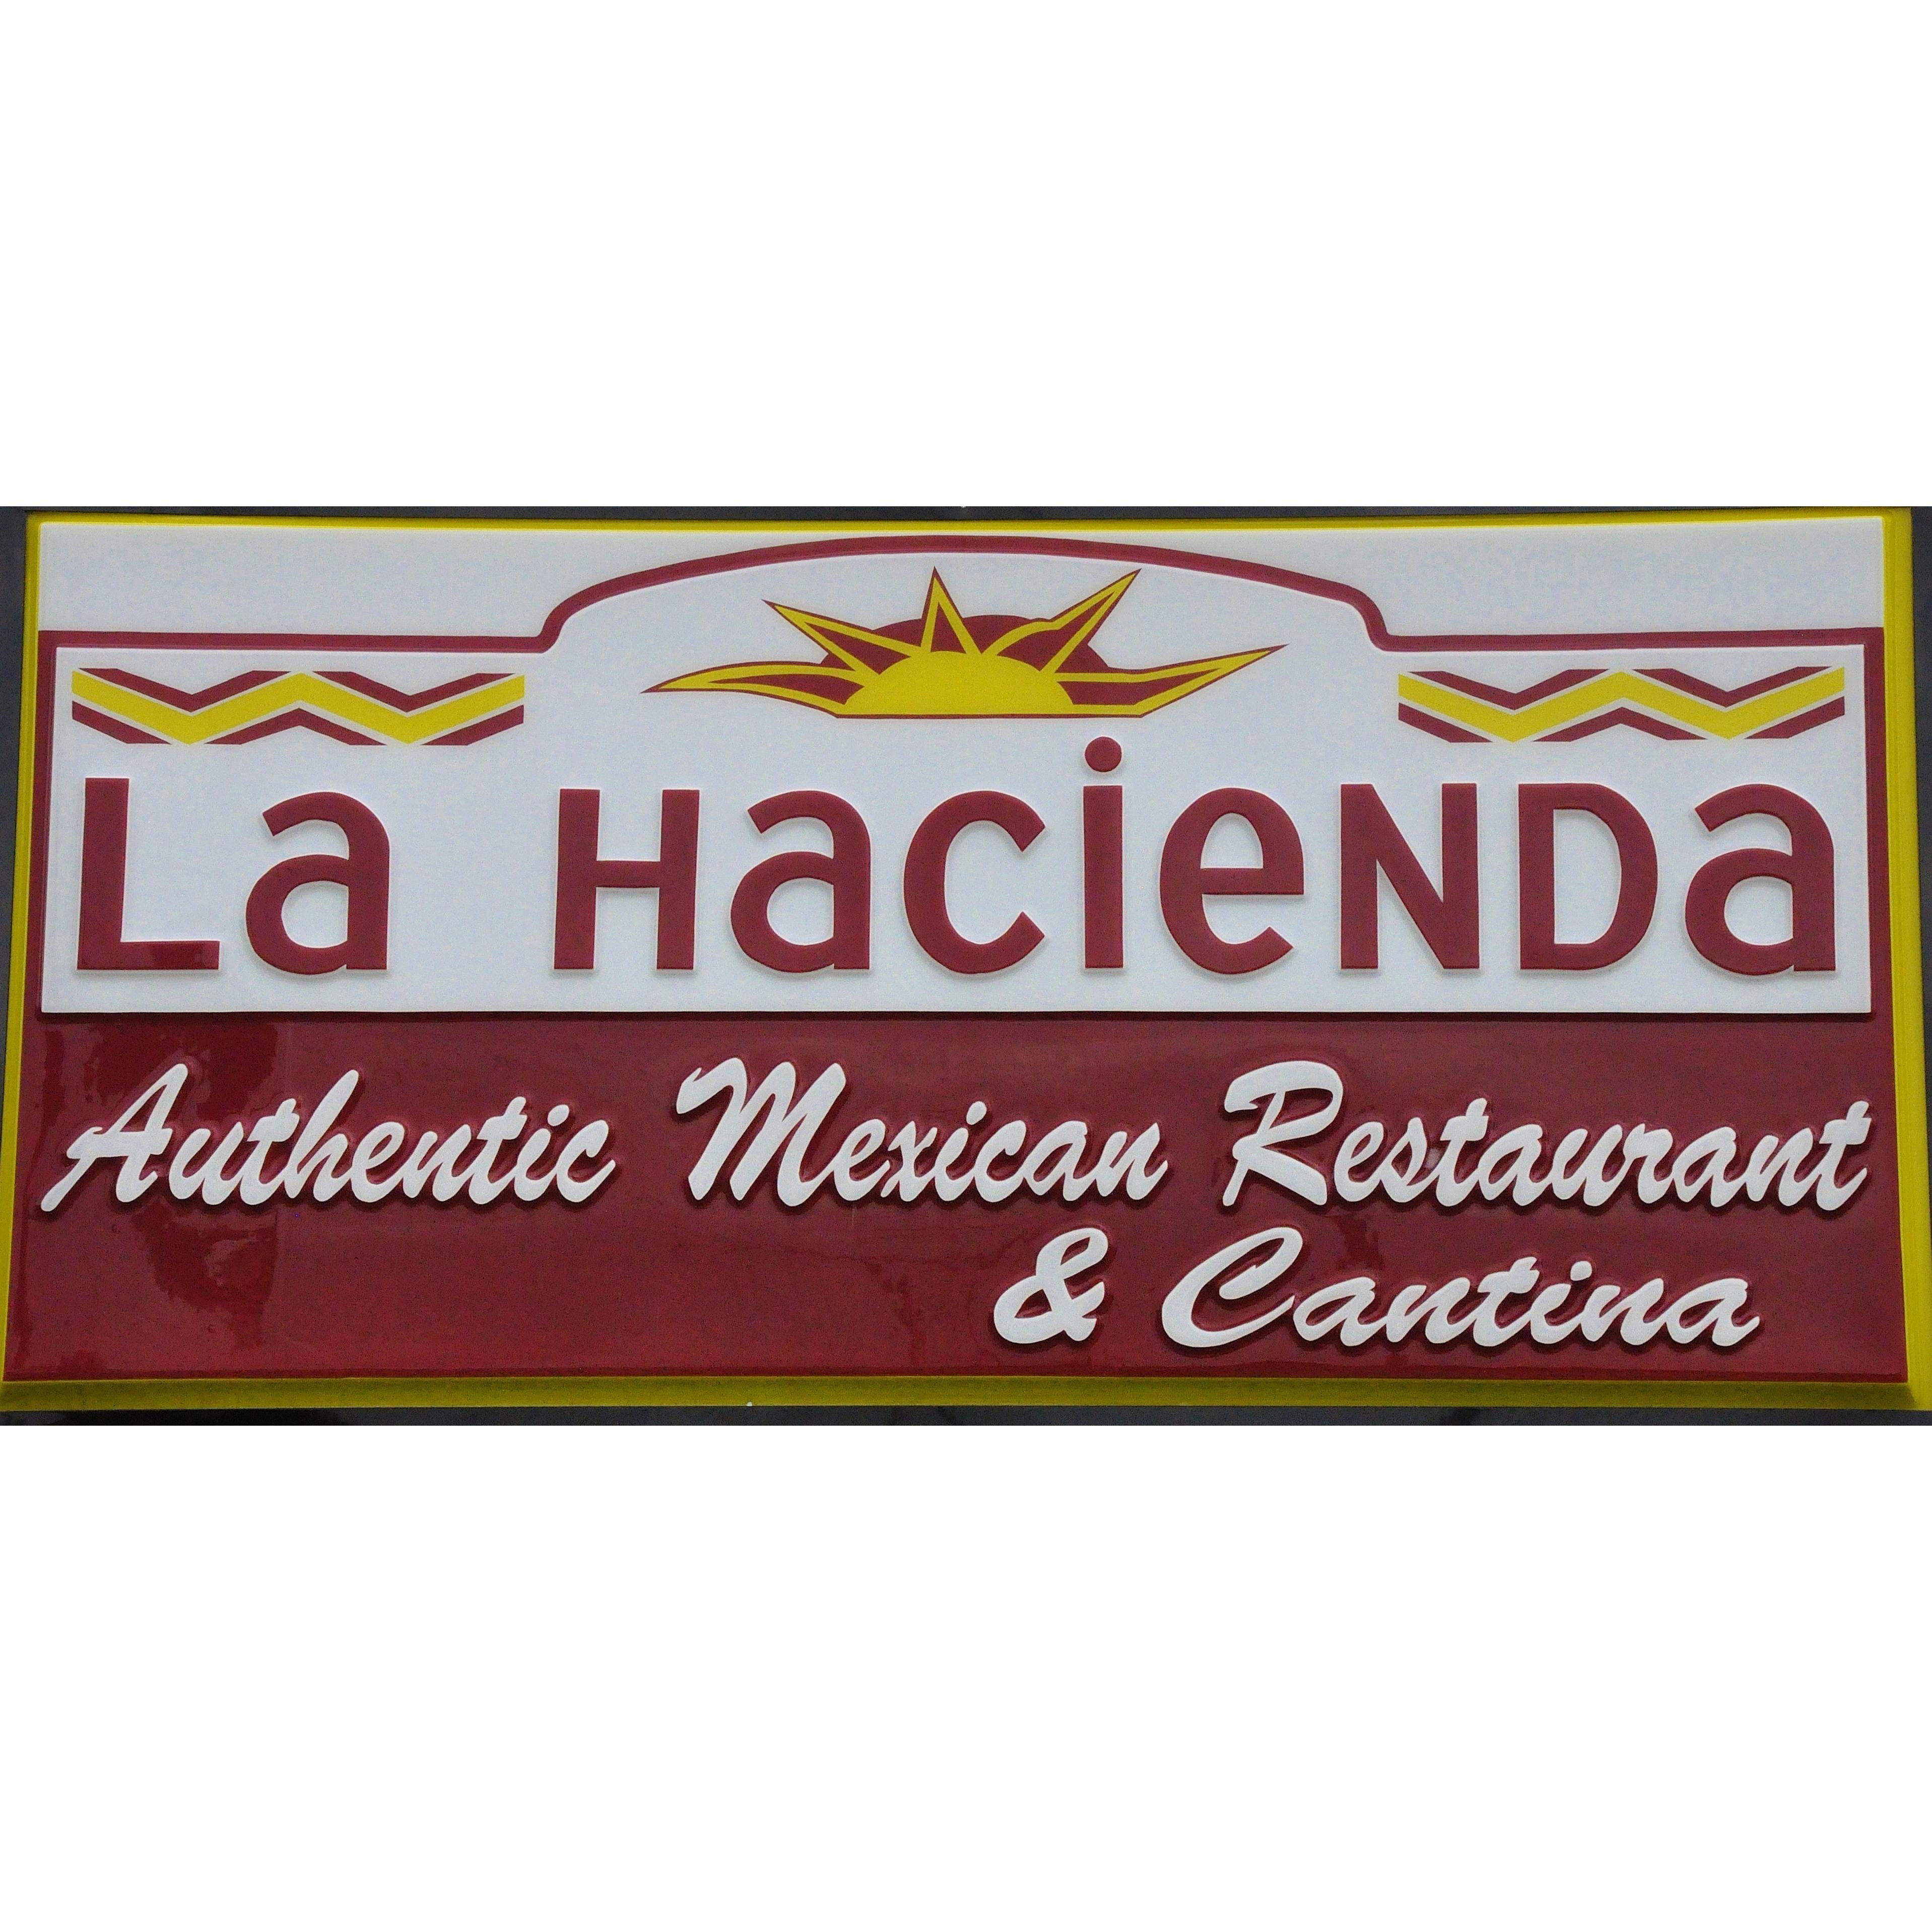 La Hacienda Mexican Restaurant & Cantina Coupons near me ...